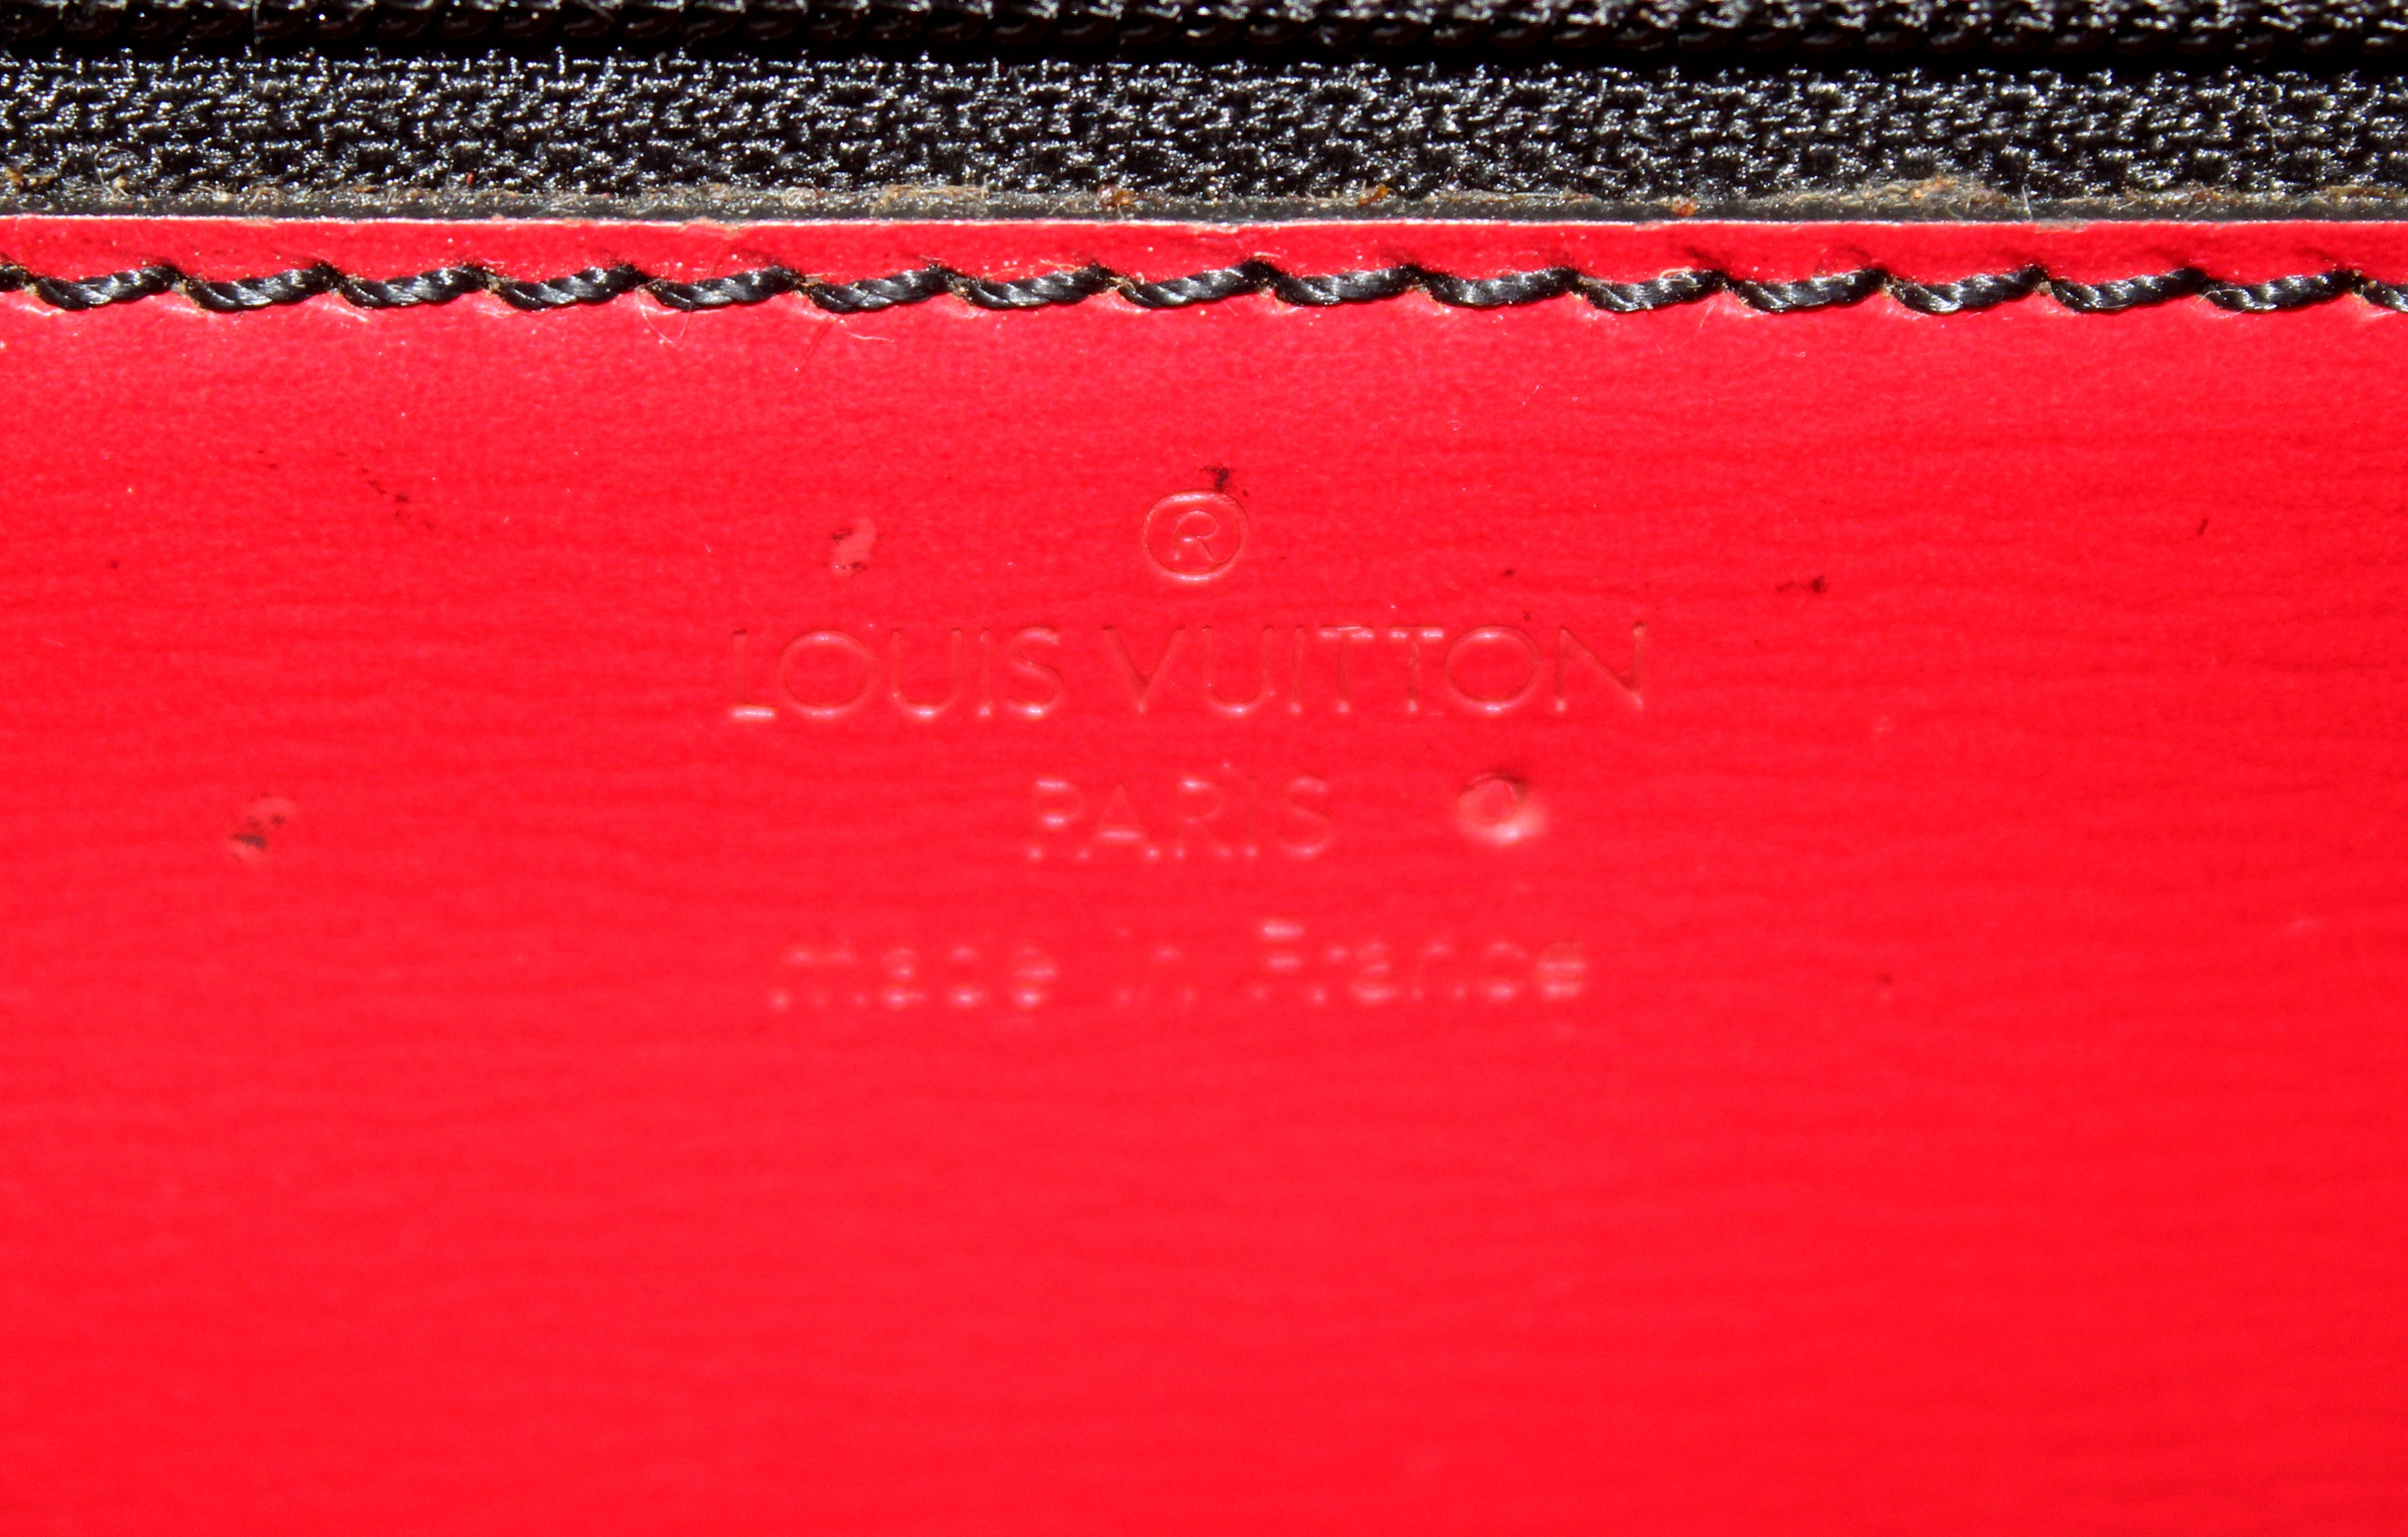 Authentic Louis Vuitton Red Epi Leather Pochette Business Flap Envelope Clutch Envelope